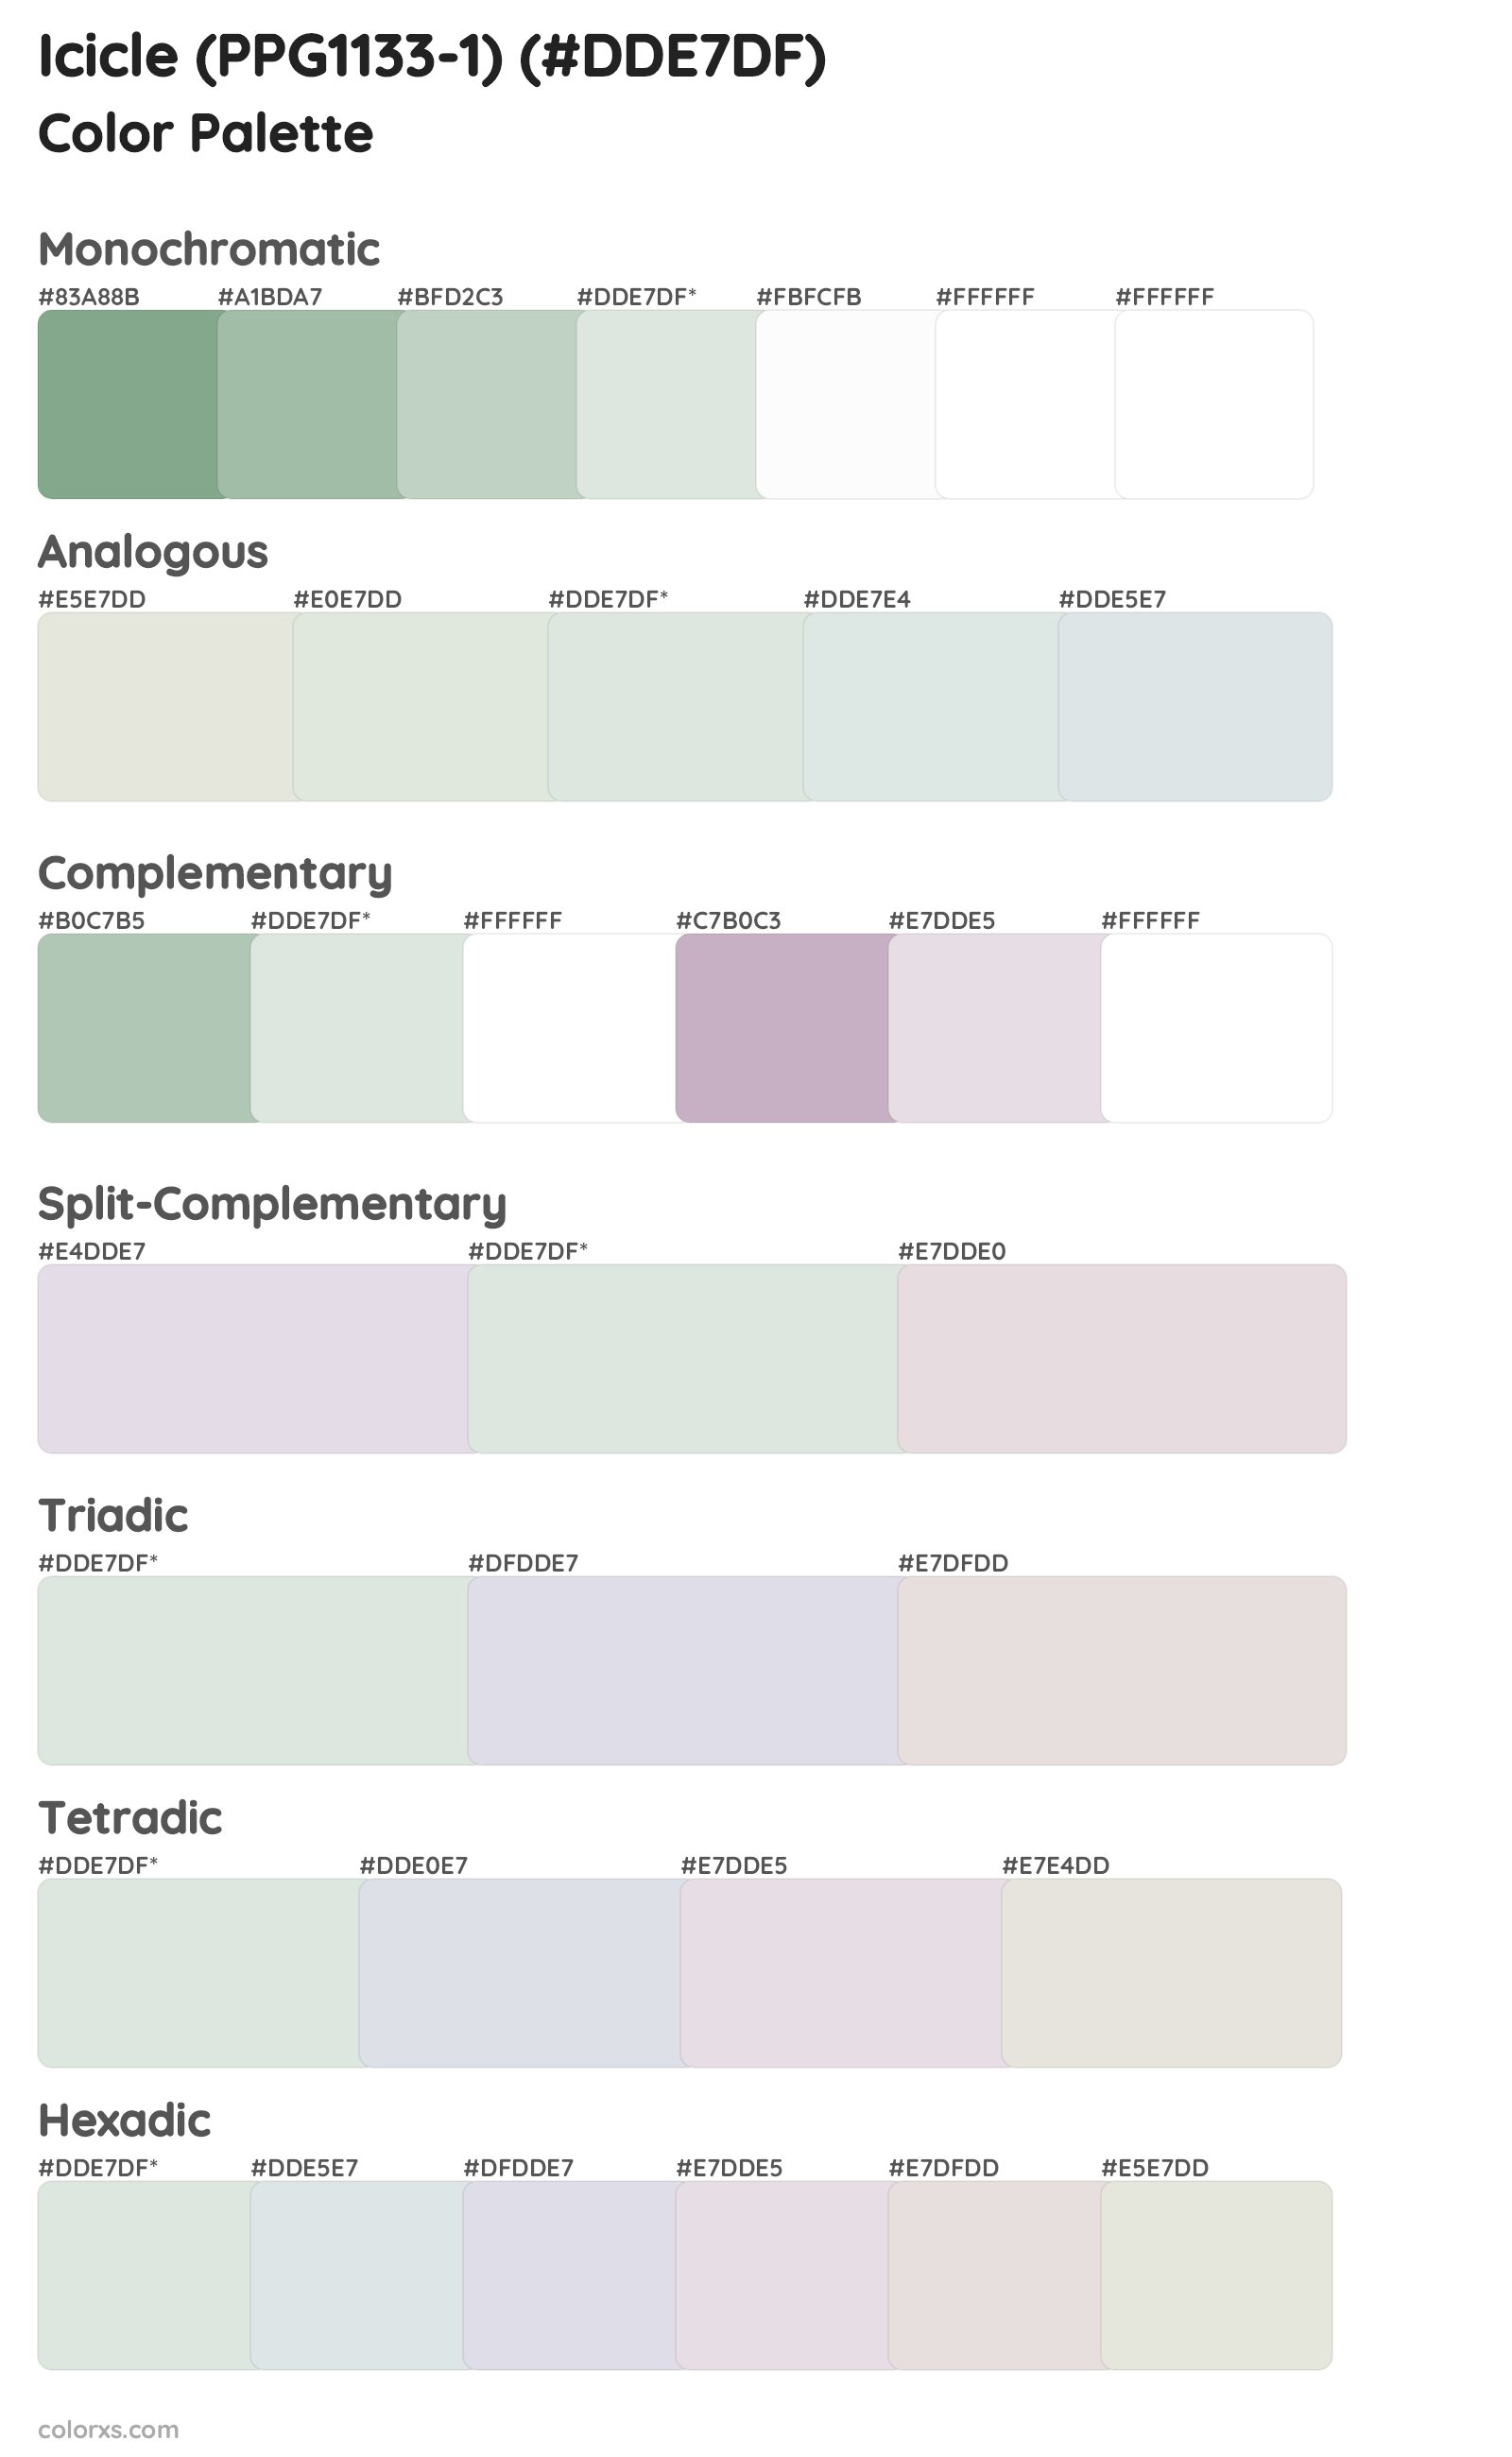 Icicle (PPG1133-1) Color Scheme Palettes